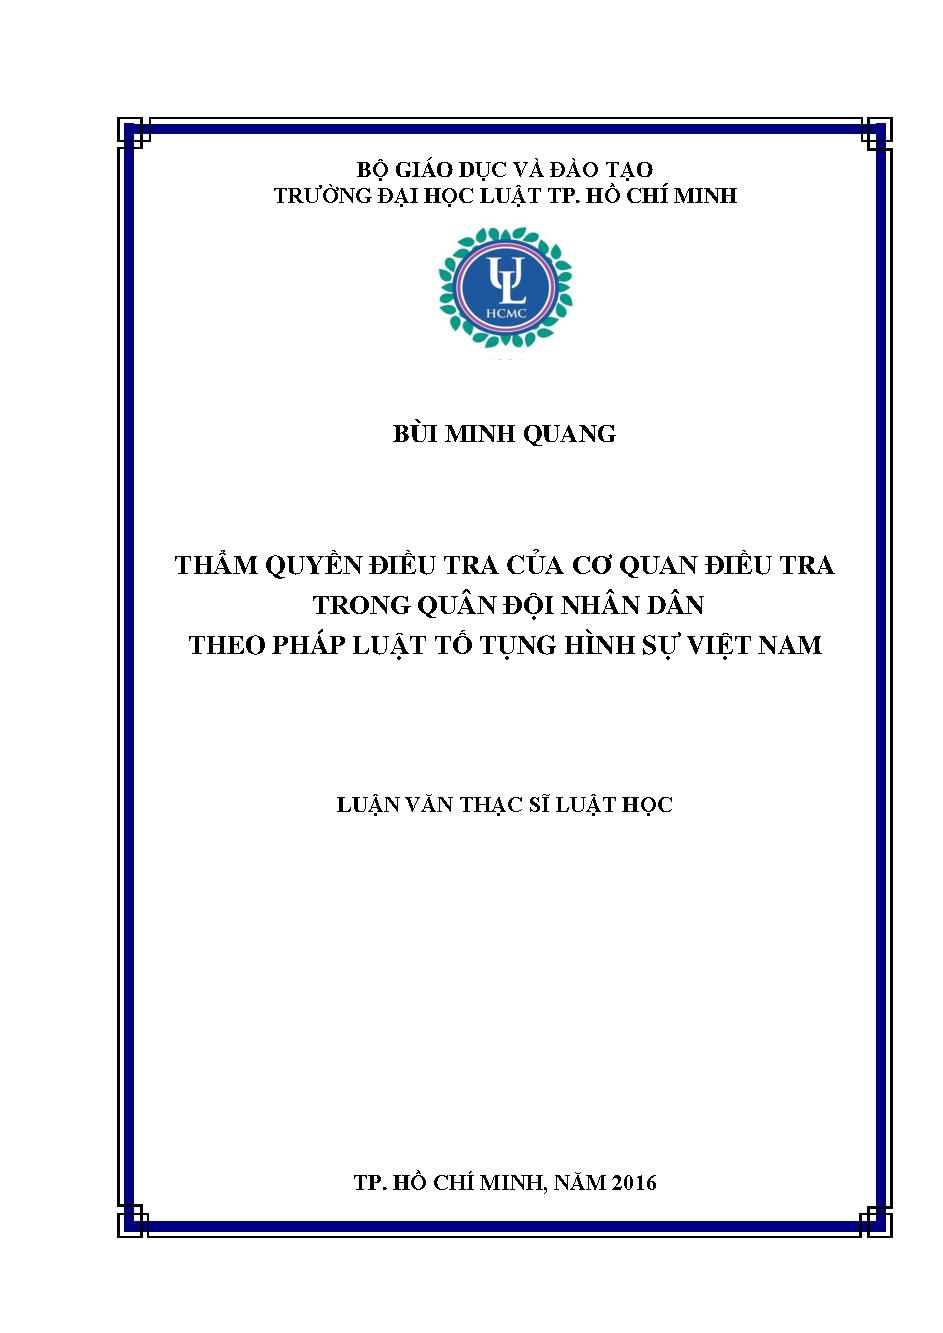 Thẩm quyền điều tra của cơ quan điều tra trong quân đội nhân dân theo pháp luật tố tụng hình sự Việt Nam